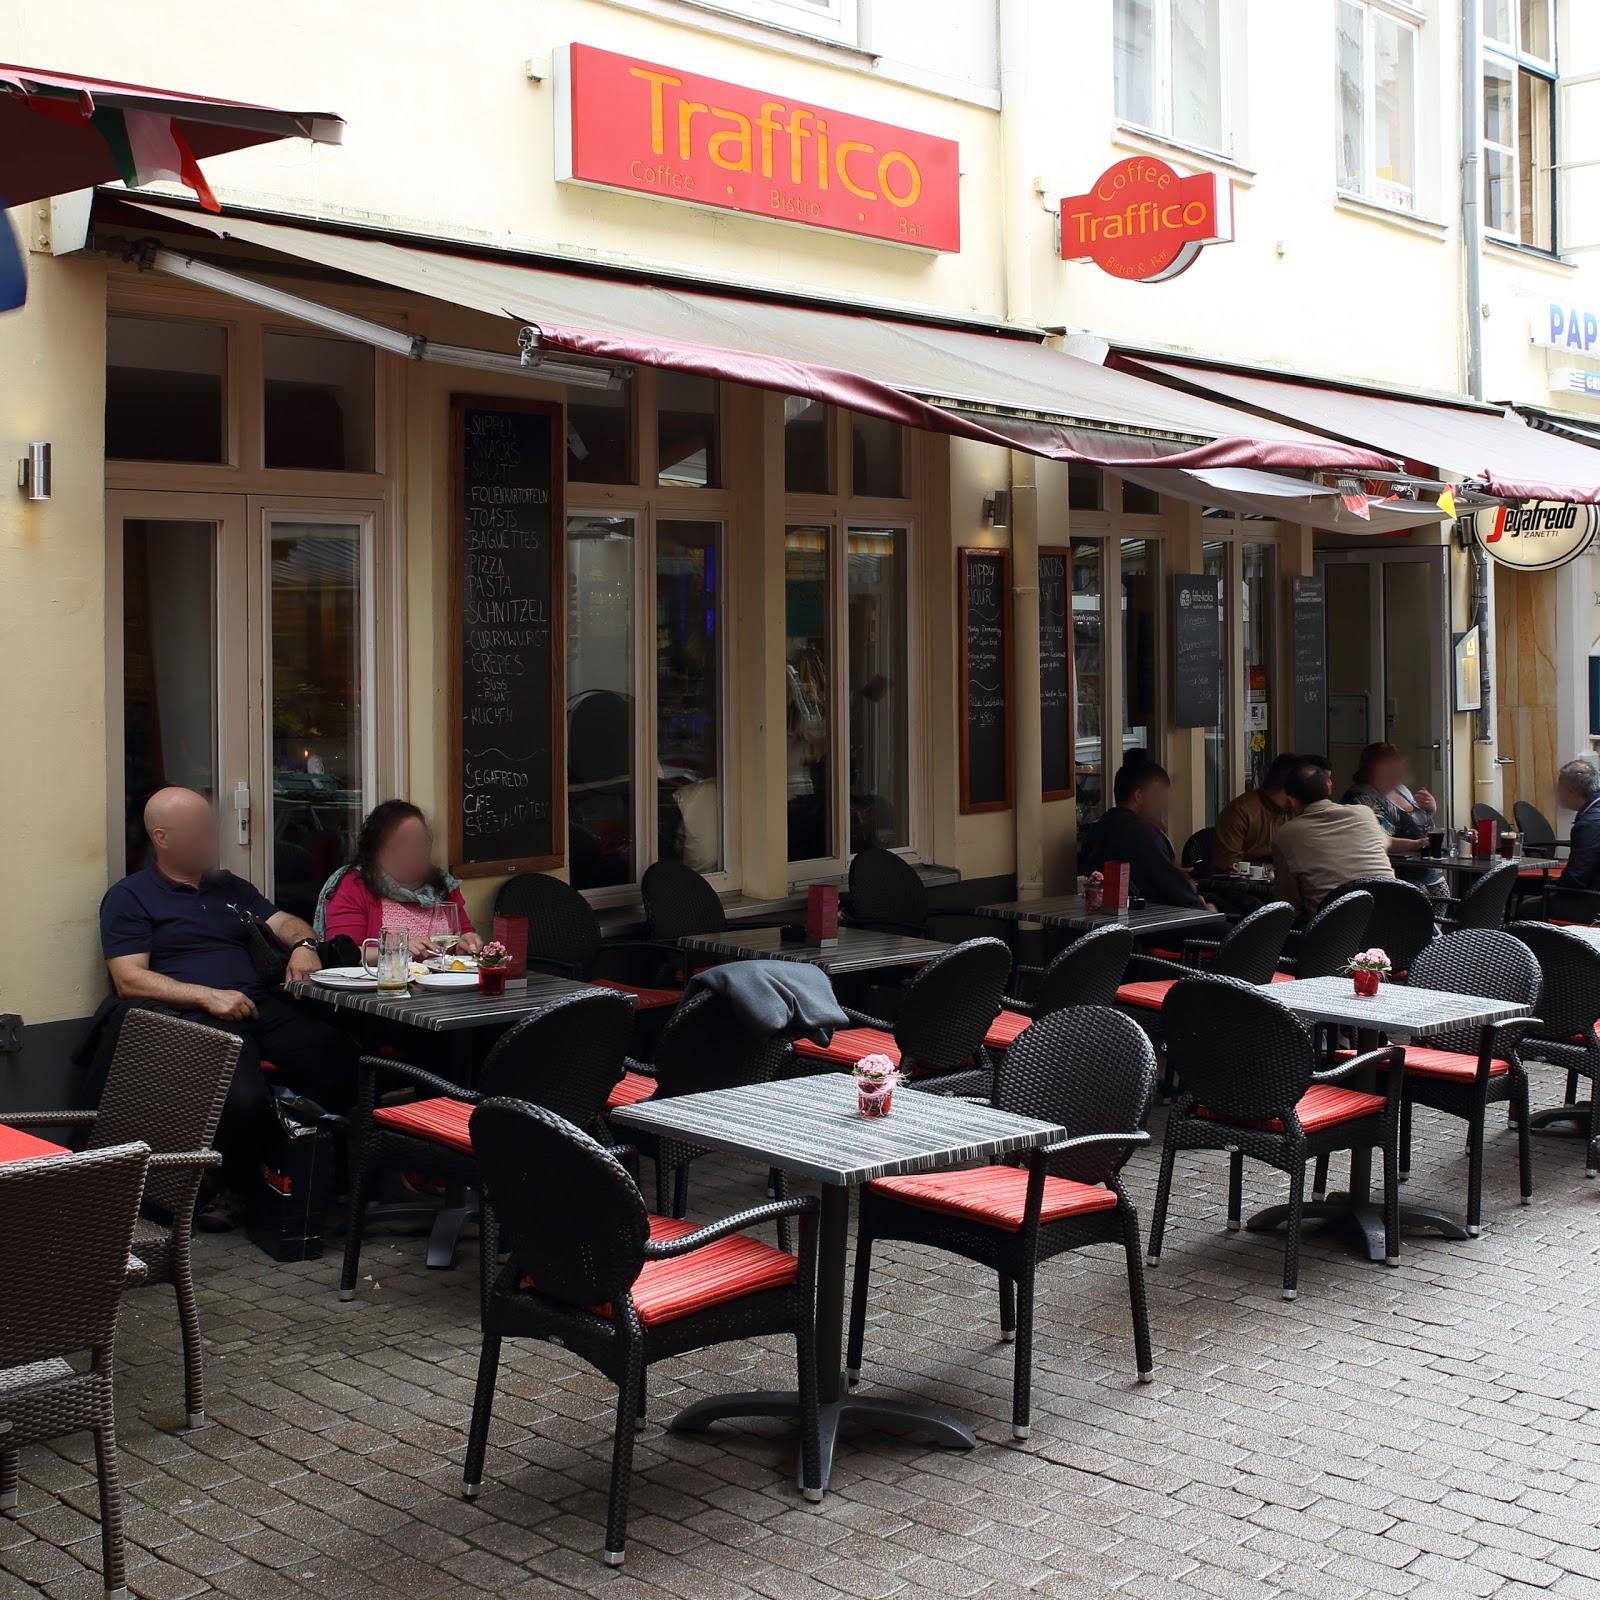 Restaurant "Traffico Cocktailbar, Restaurant und Café - täglich bis Open End!" in Lübeck